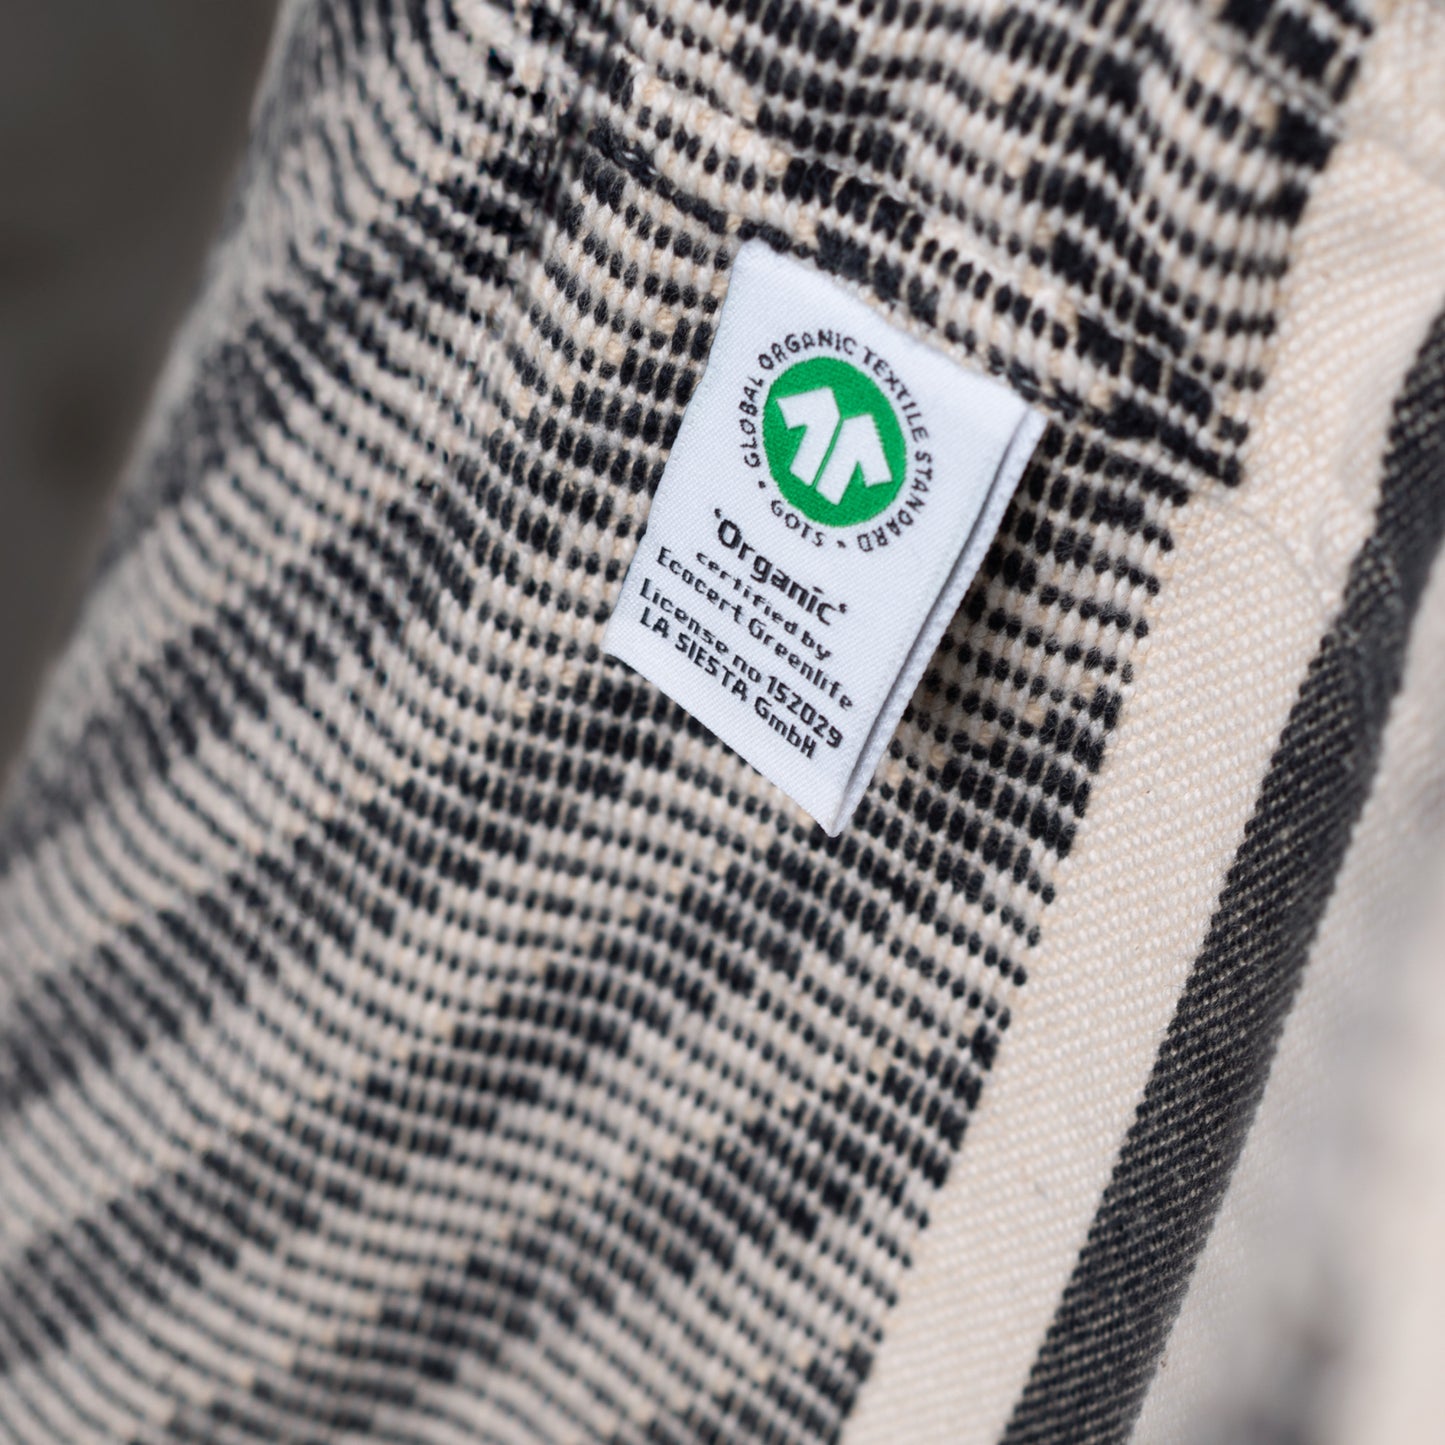 Udine Organic Zebra - Riipputuoli luomupuuvillaa ja teline FSC®-sertifioitua eukalyptusta